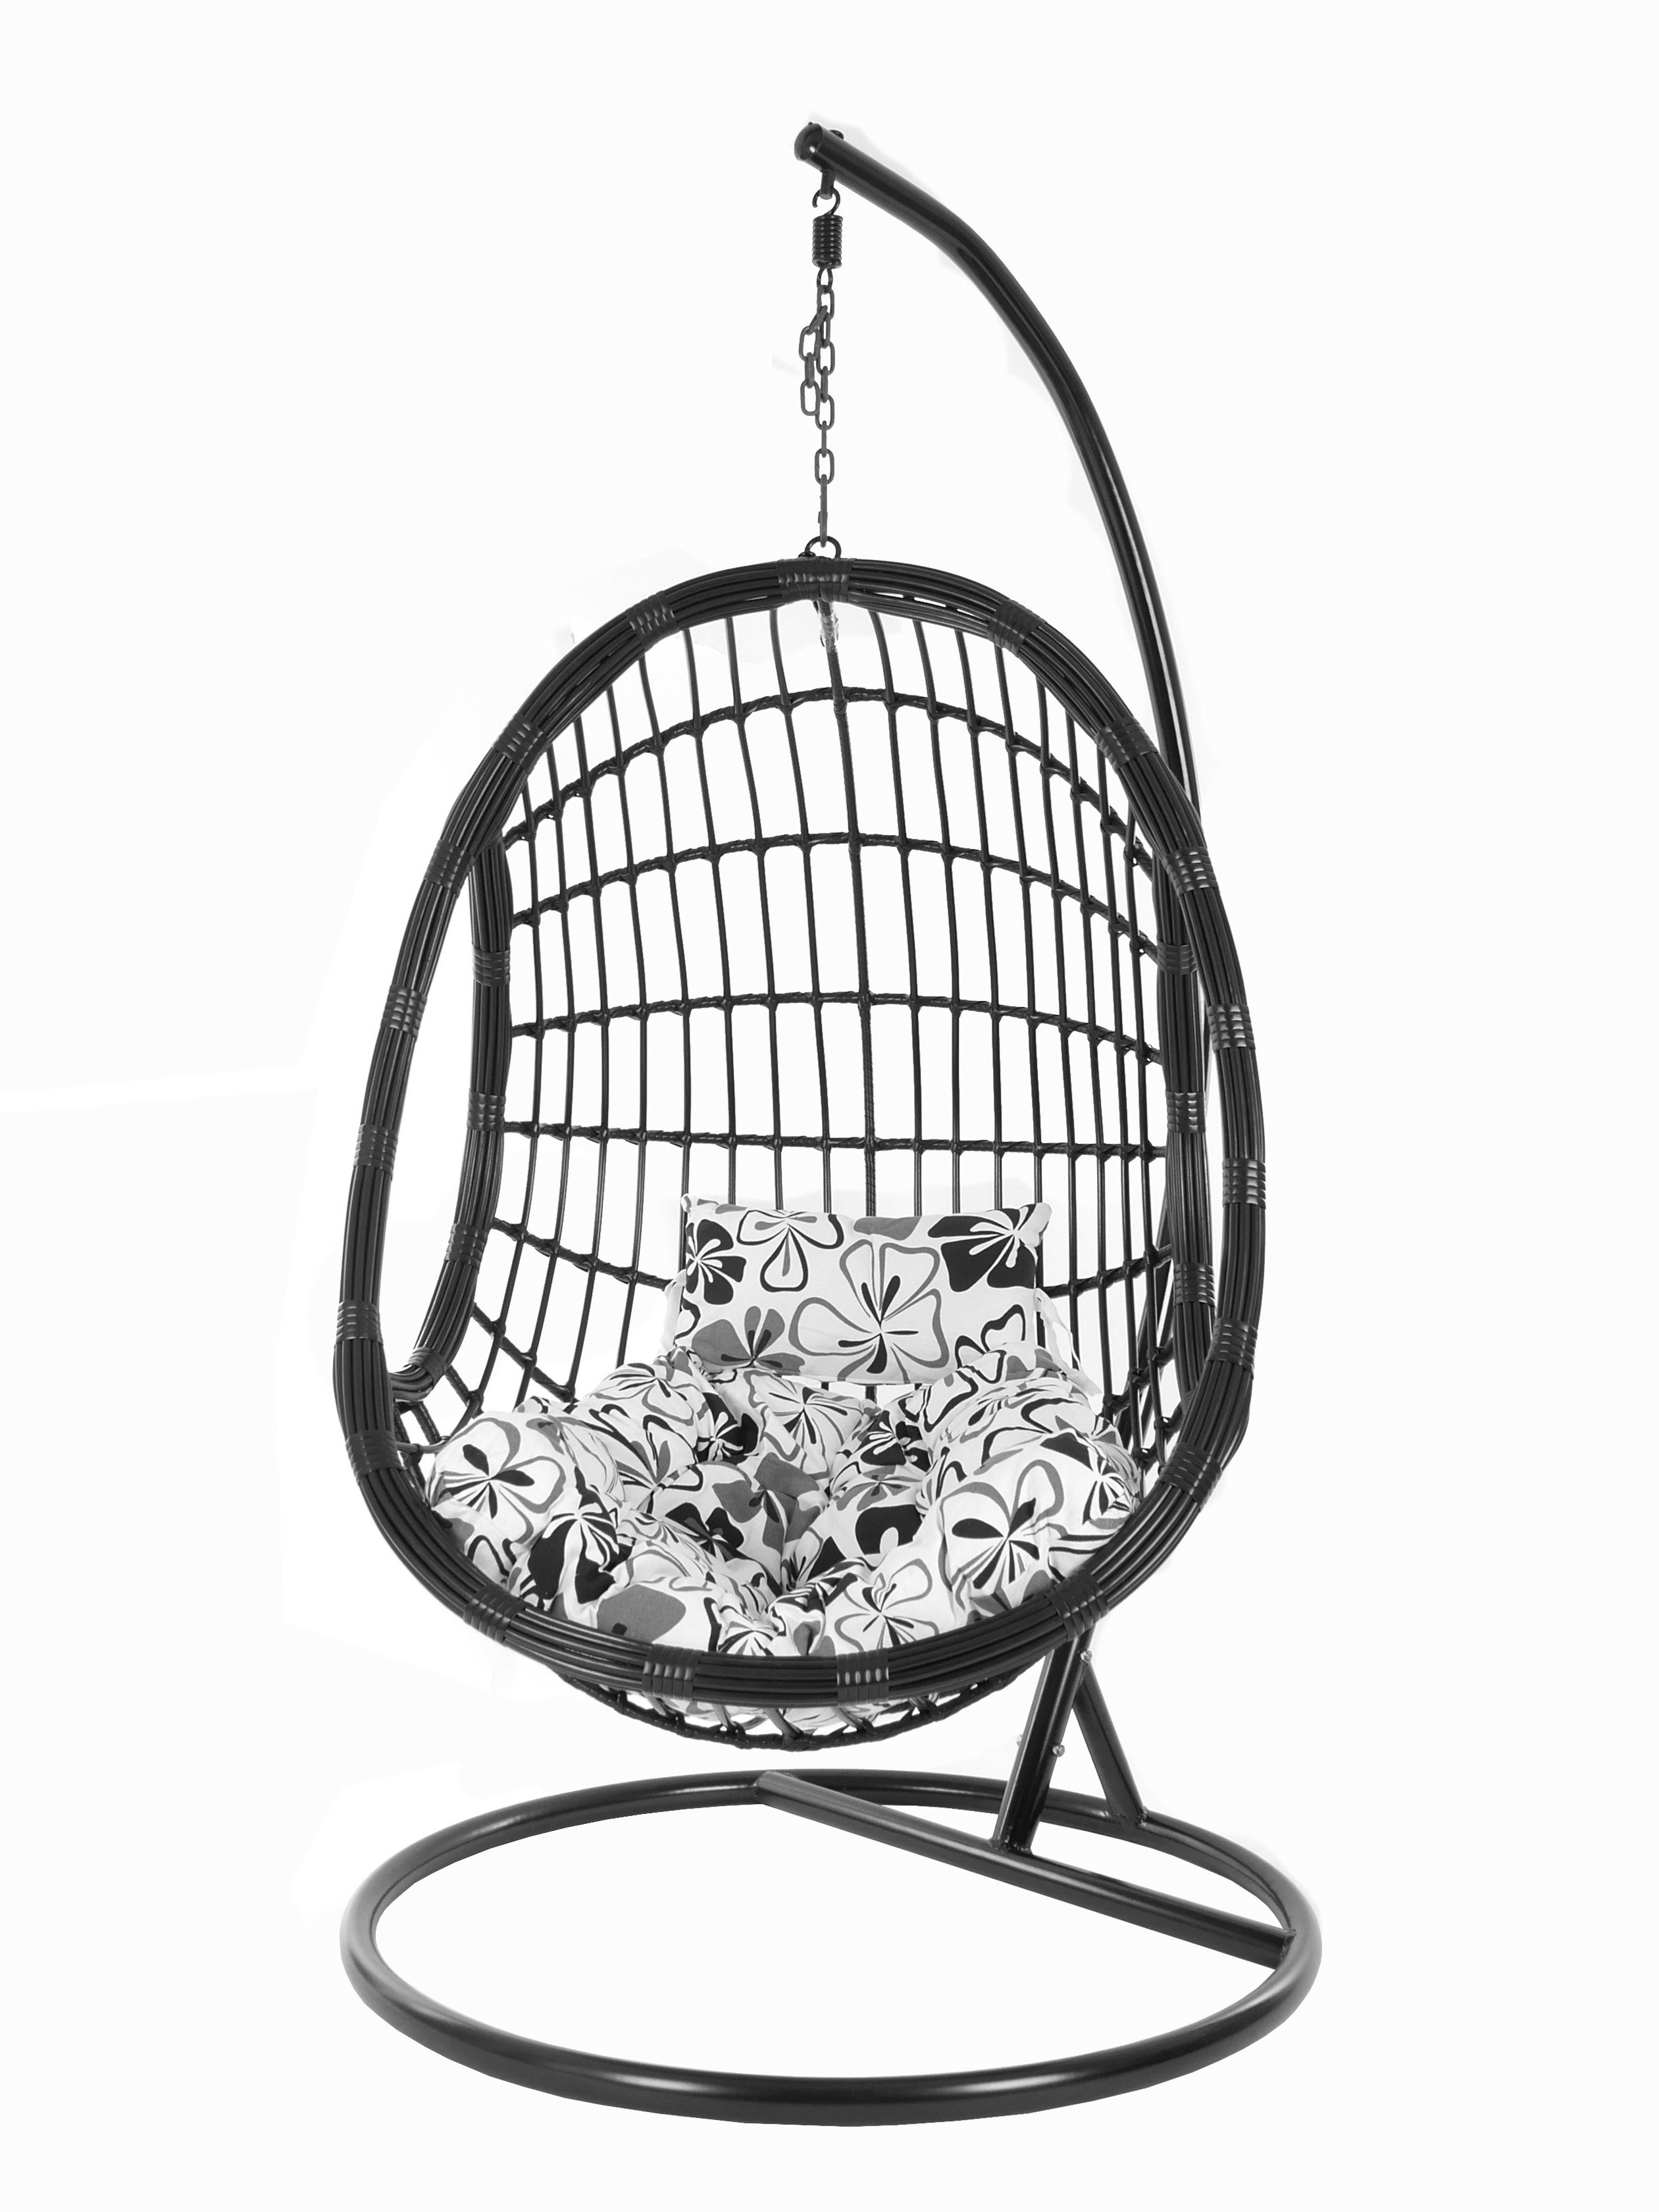 KIDEO Hängesessel PALMANOVA black, Swing flower Kissen, (9800 Loungemöbel, schwarz, love) edles Chair, mit Schwebesessel, Design Gestell Hängesessel blumenmuster und grau fossil